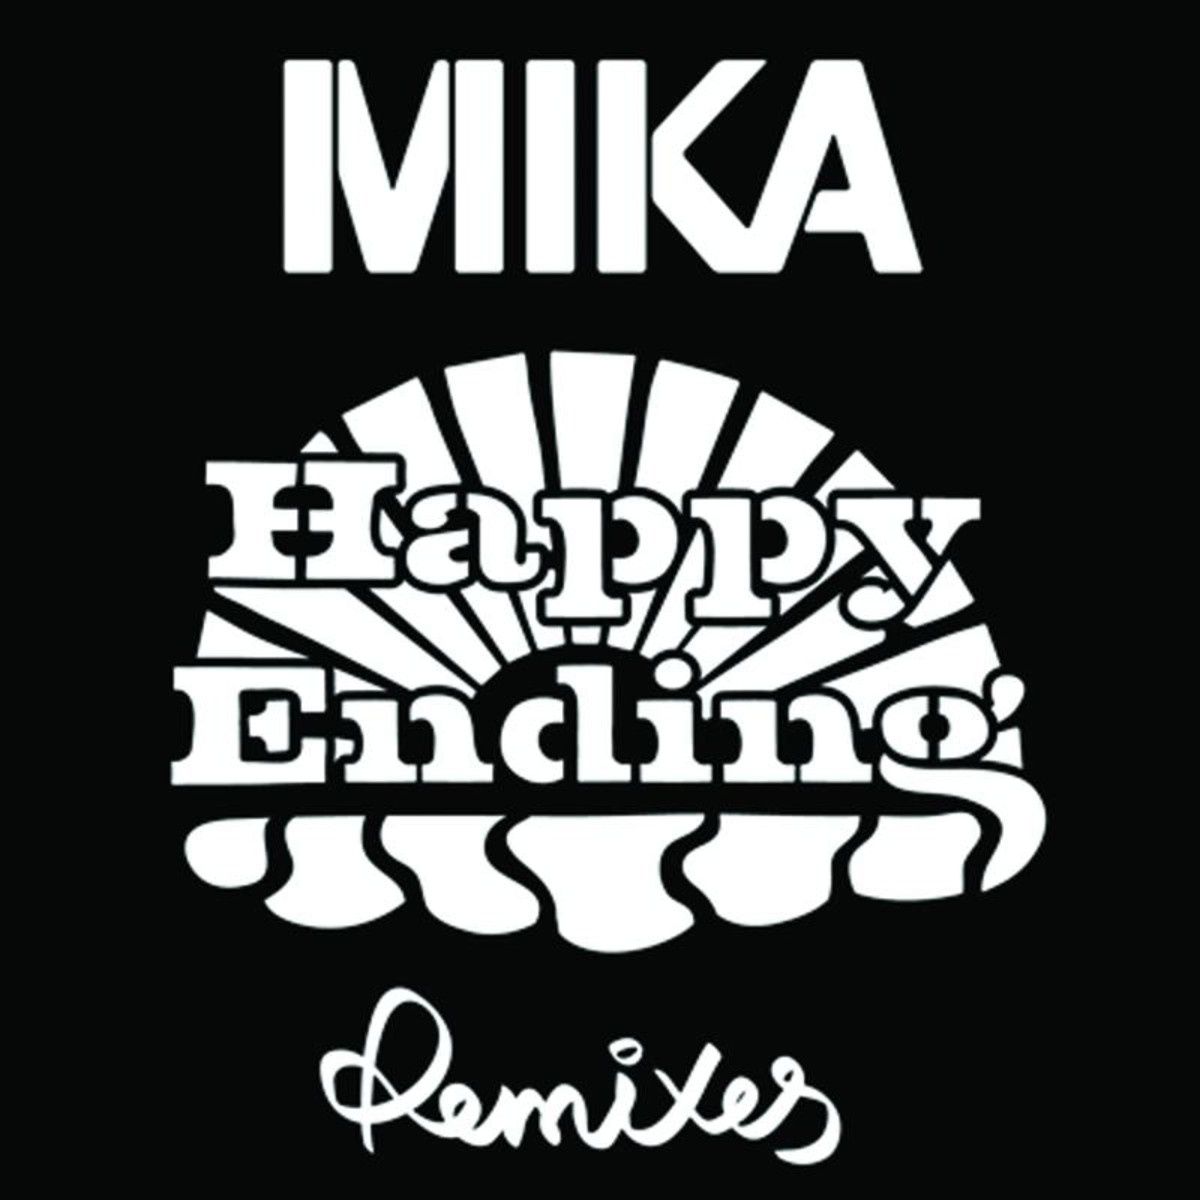 Happy Ending - LA Edit